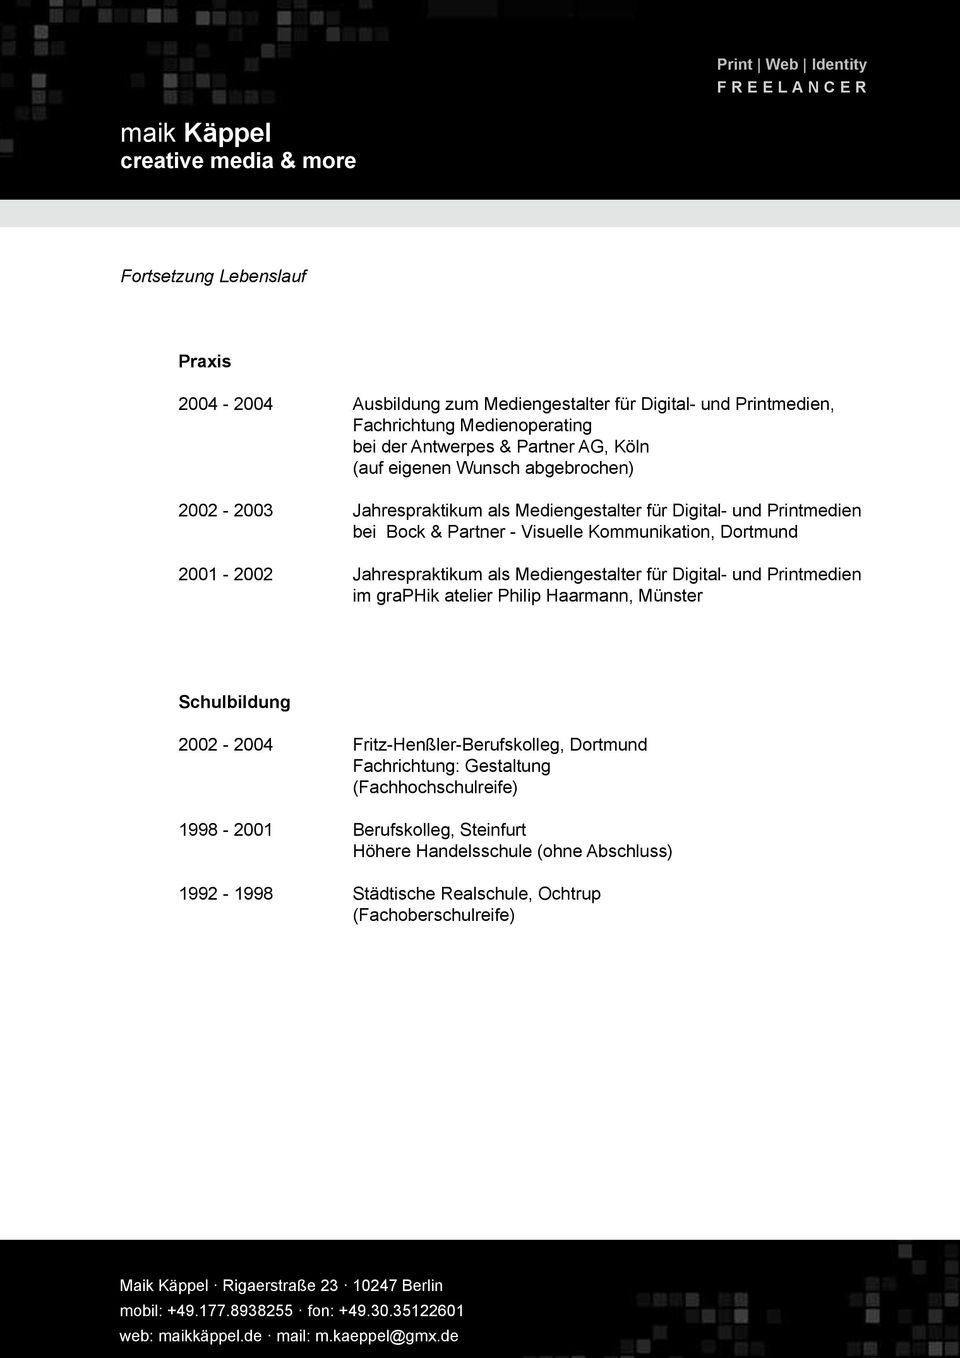 Jahrespraktikum als Mediengestalter für Digital- und Printmedien im graphik atelier Philip Haarmann, Münster Schulbildung 2002-2004 Fritz-Henßler-Berufskolleg, Dortmund